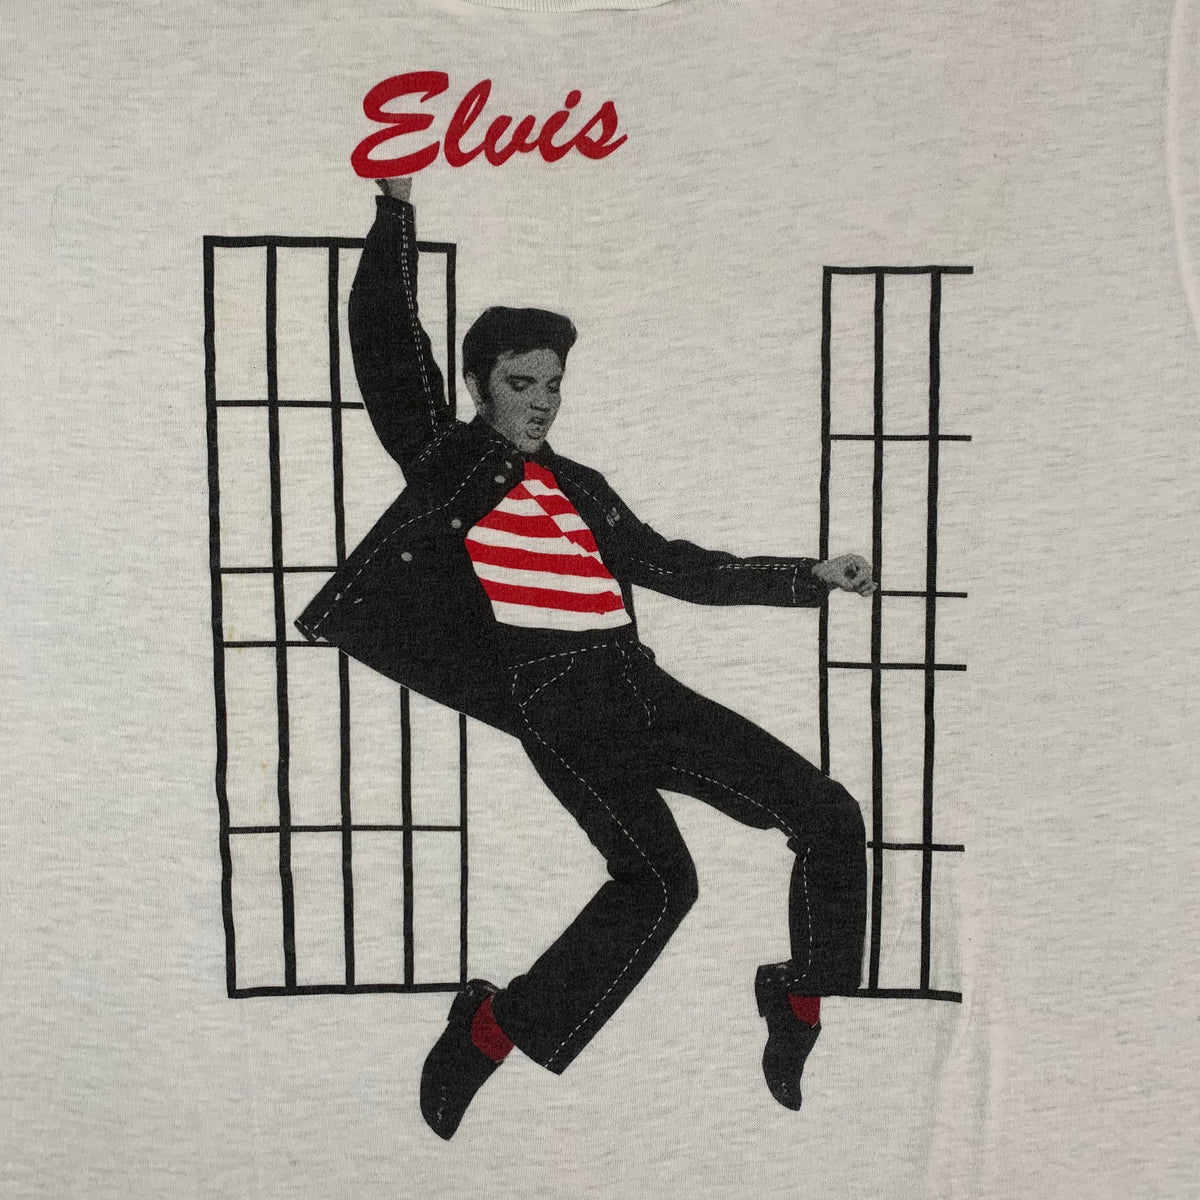 Vintage Elvis &quot;Jailhouse Rock&quot; T-Shirt